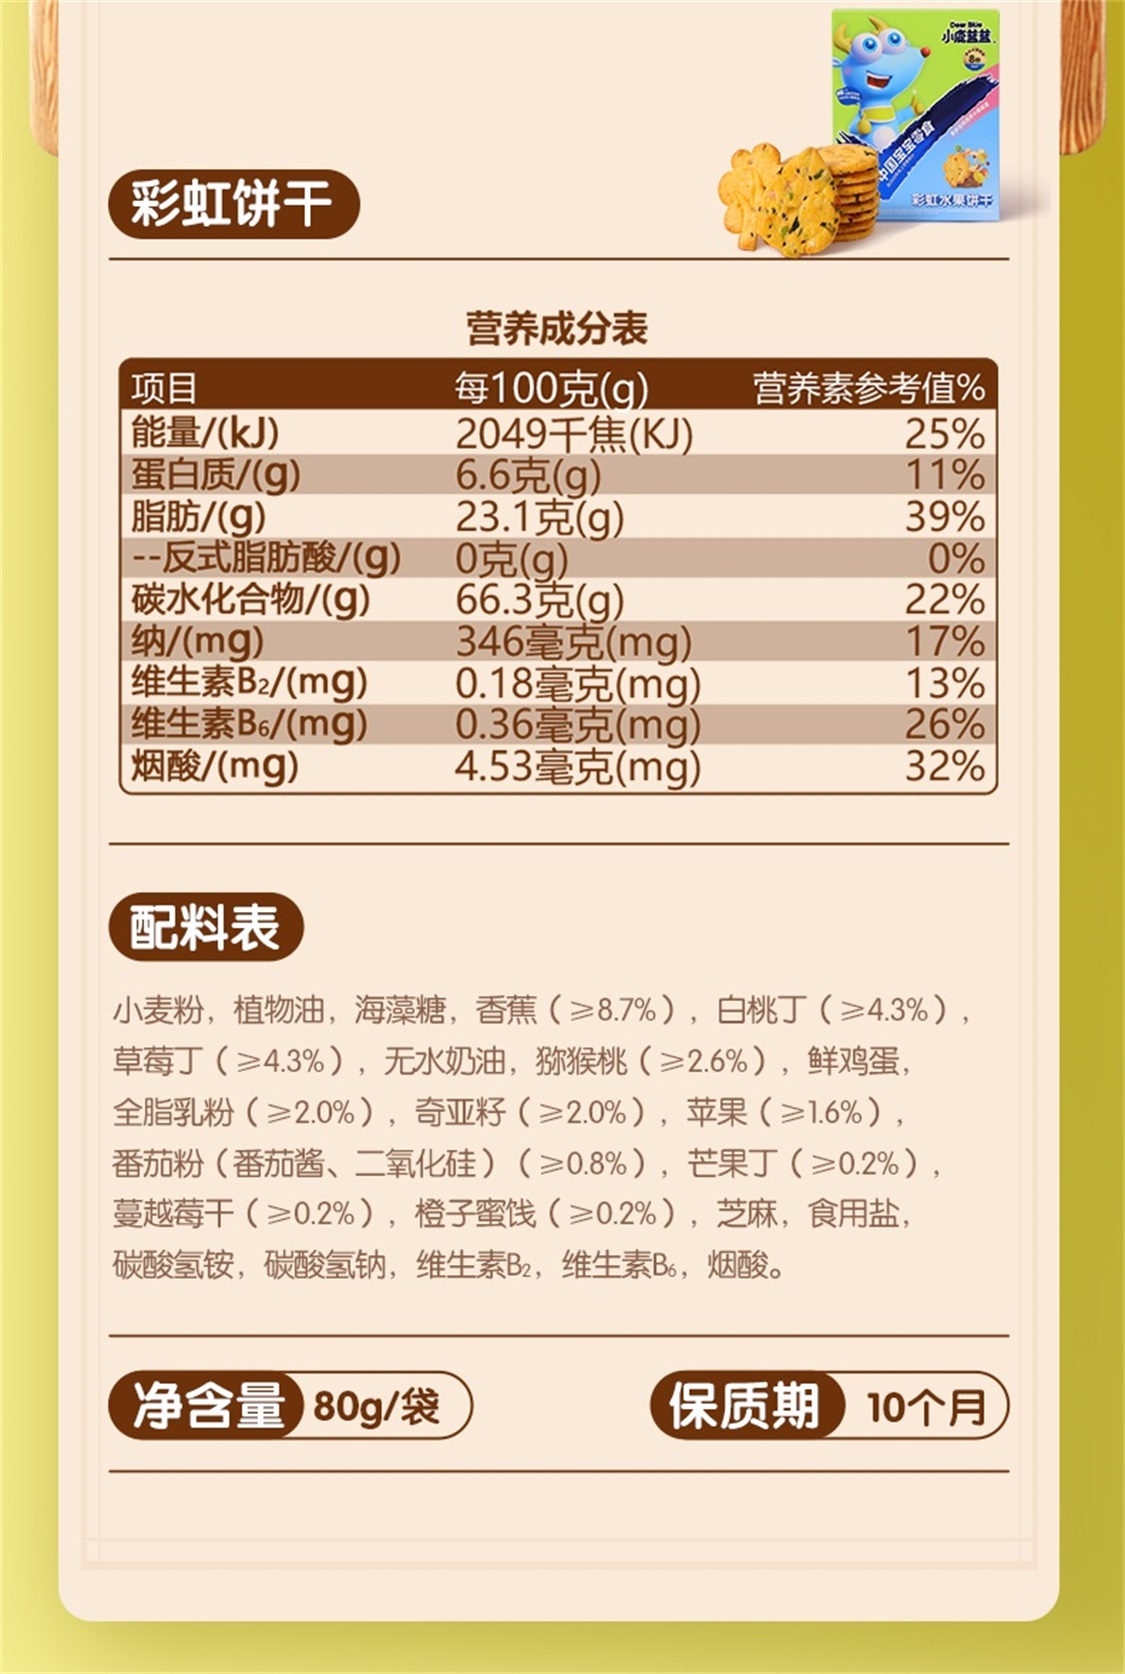 小鹿蓝蓝_彩虹饼干 8种元气水果非油炸宝宝零食酥脆饼干独立小袋儿童饼干零食 80g